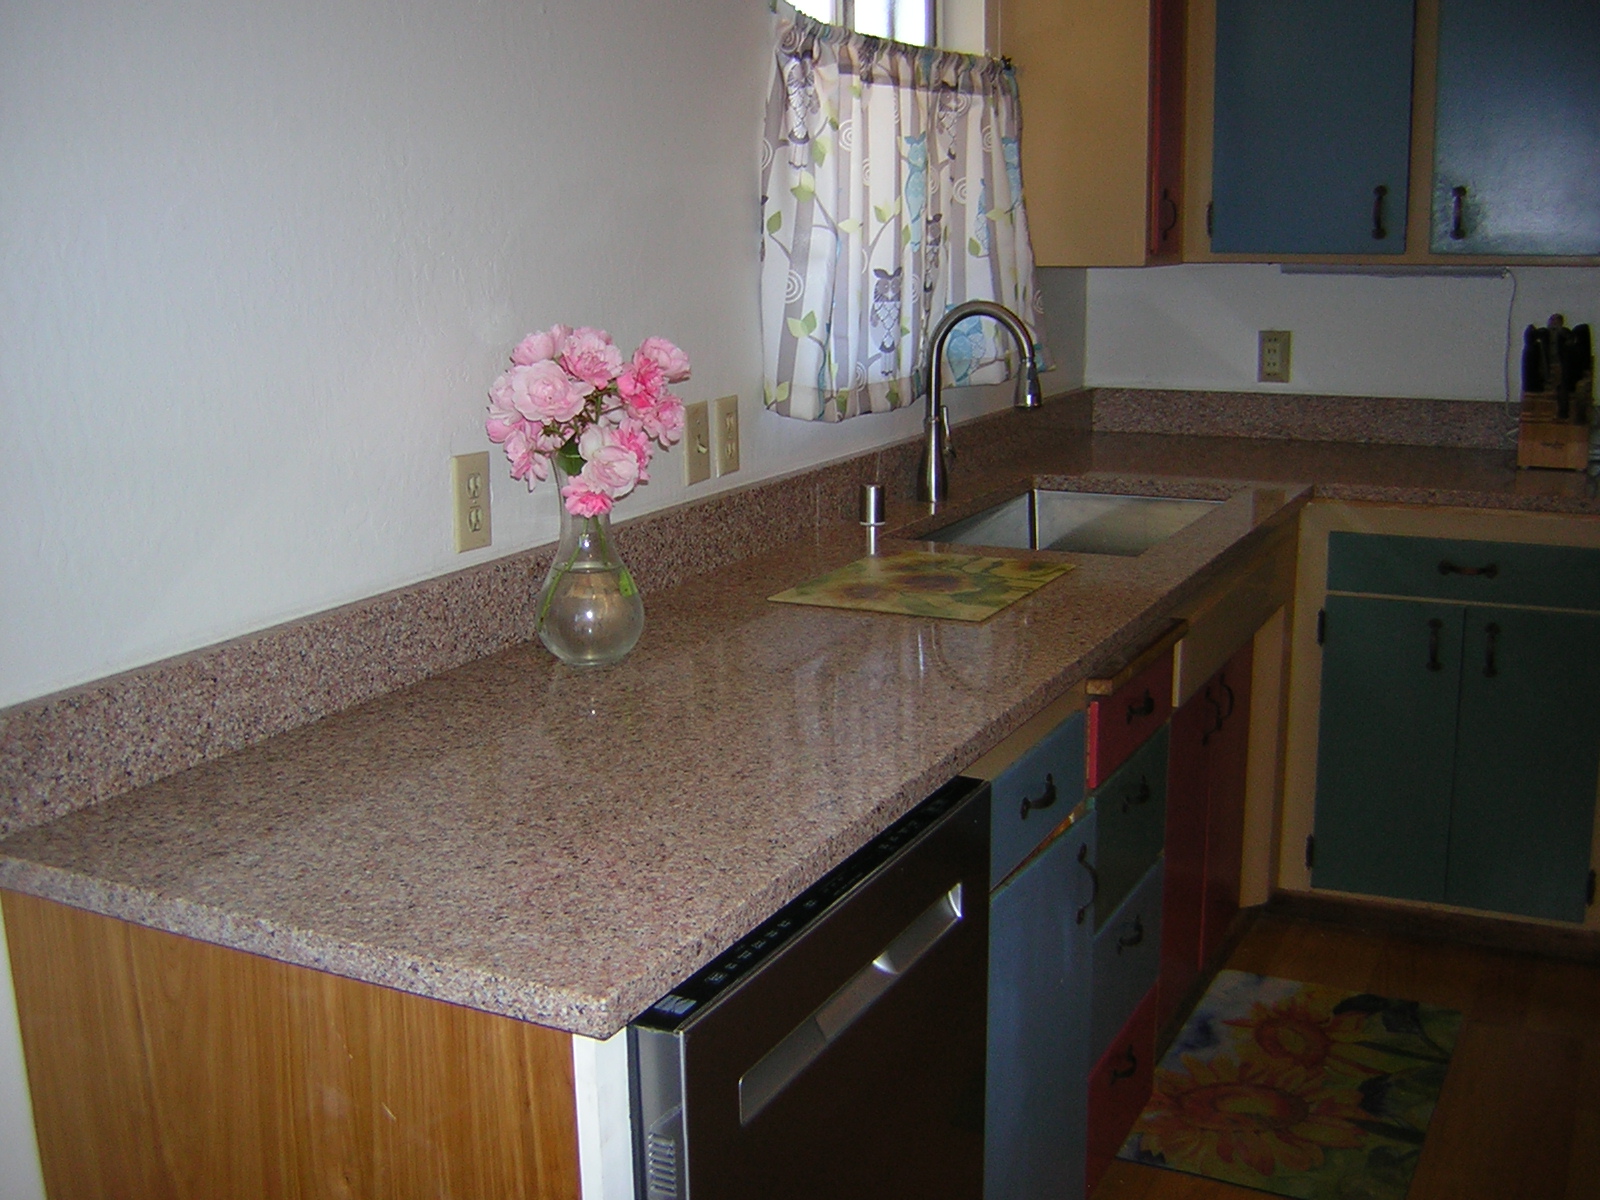 Terra Garden Kitchen Improvements New Counter Sink Dishwasher